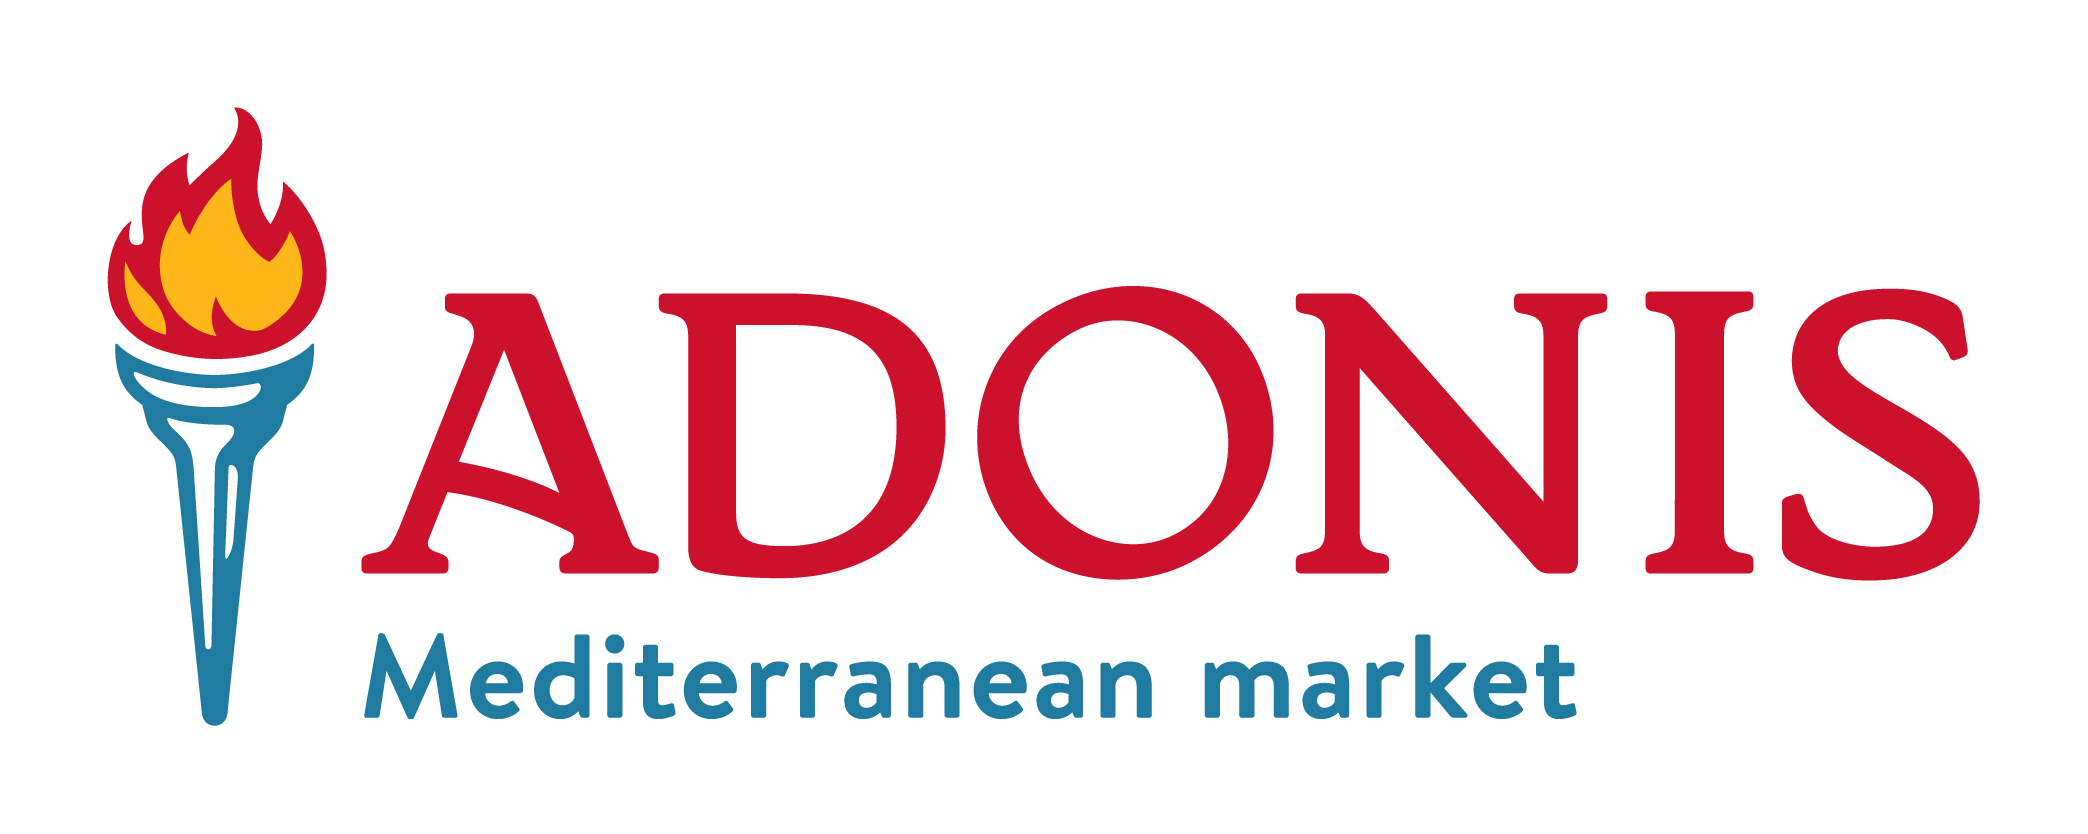 Adonis Mediterranean market logo